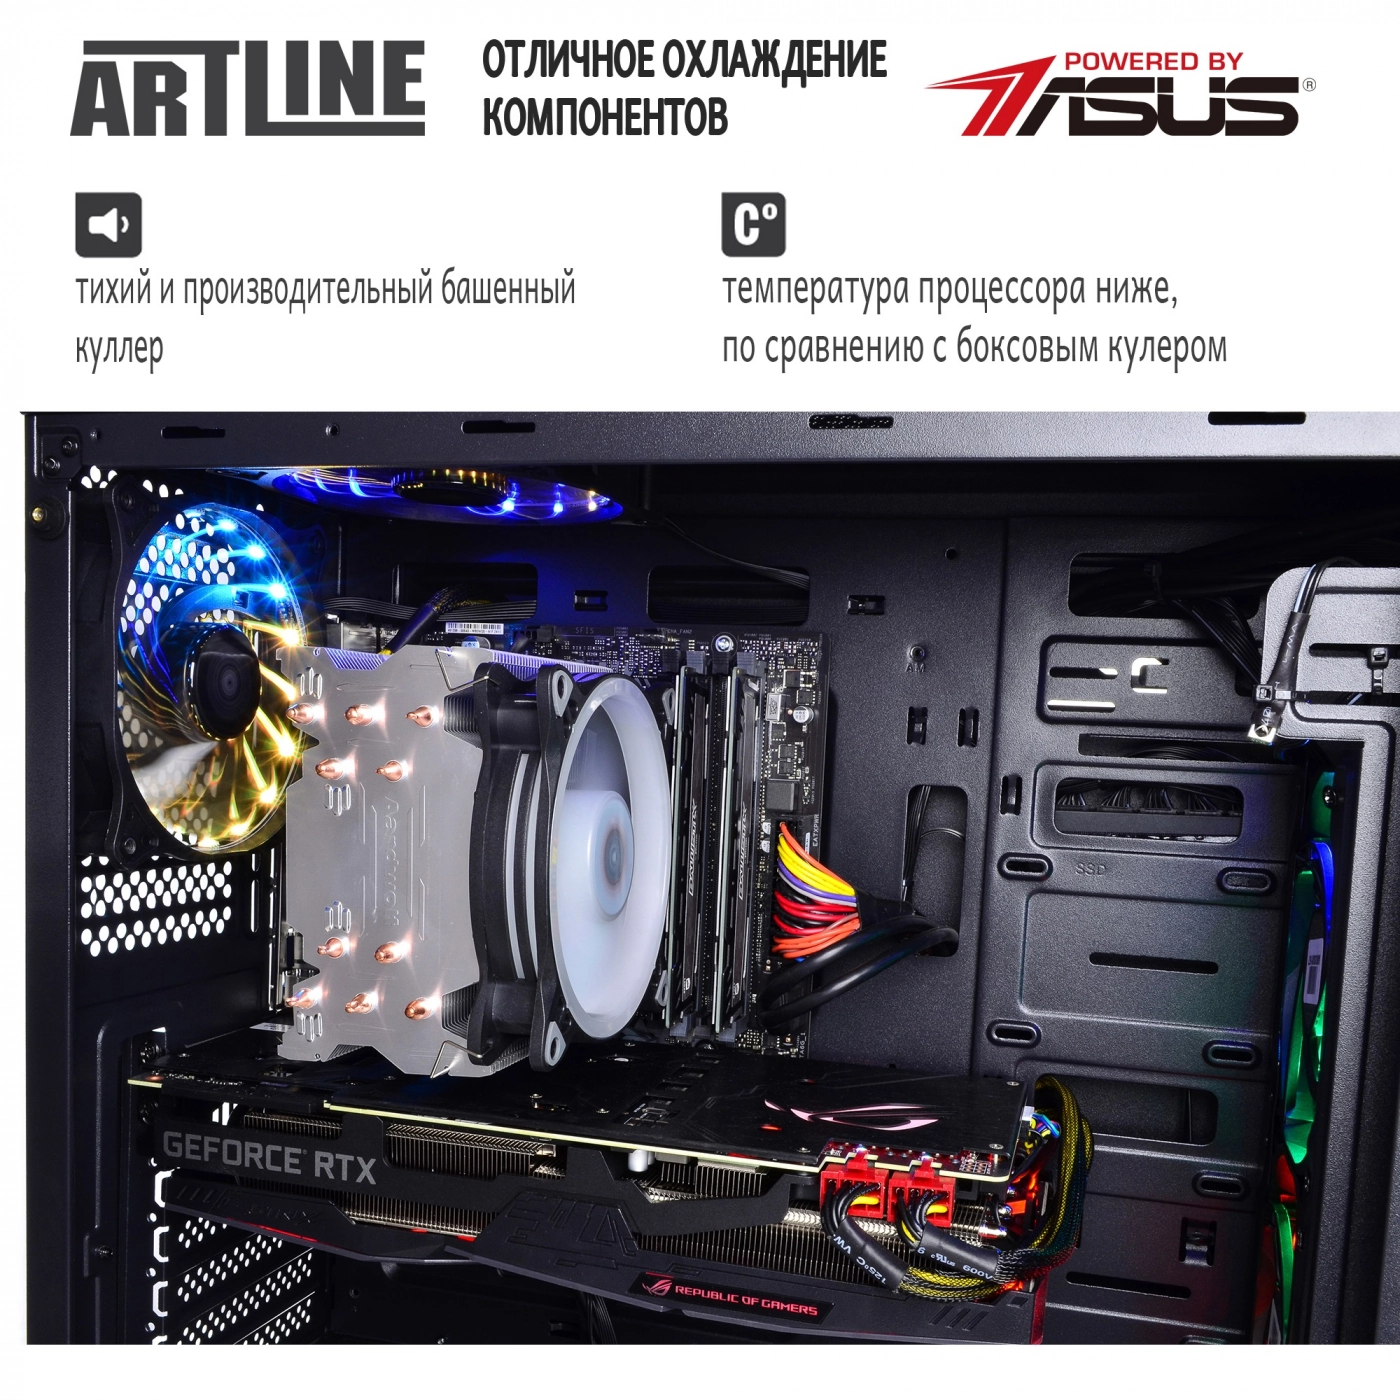 Купить Компьютер ARTLINE Gaming X93v14 - фото 6